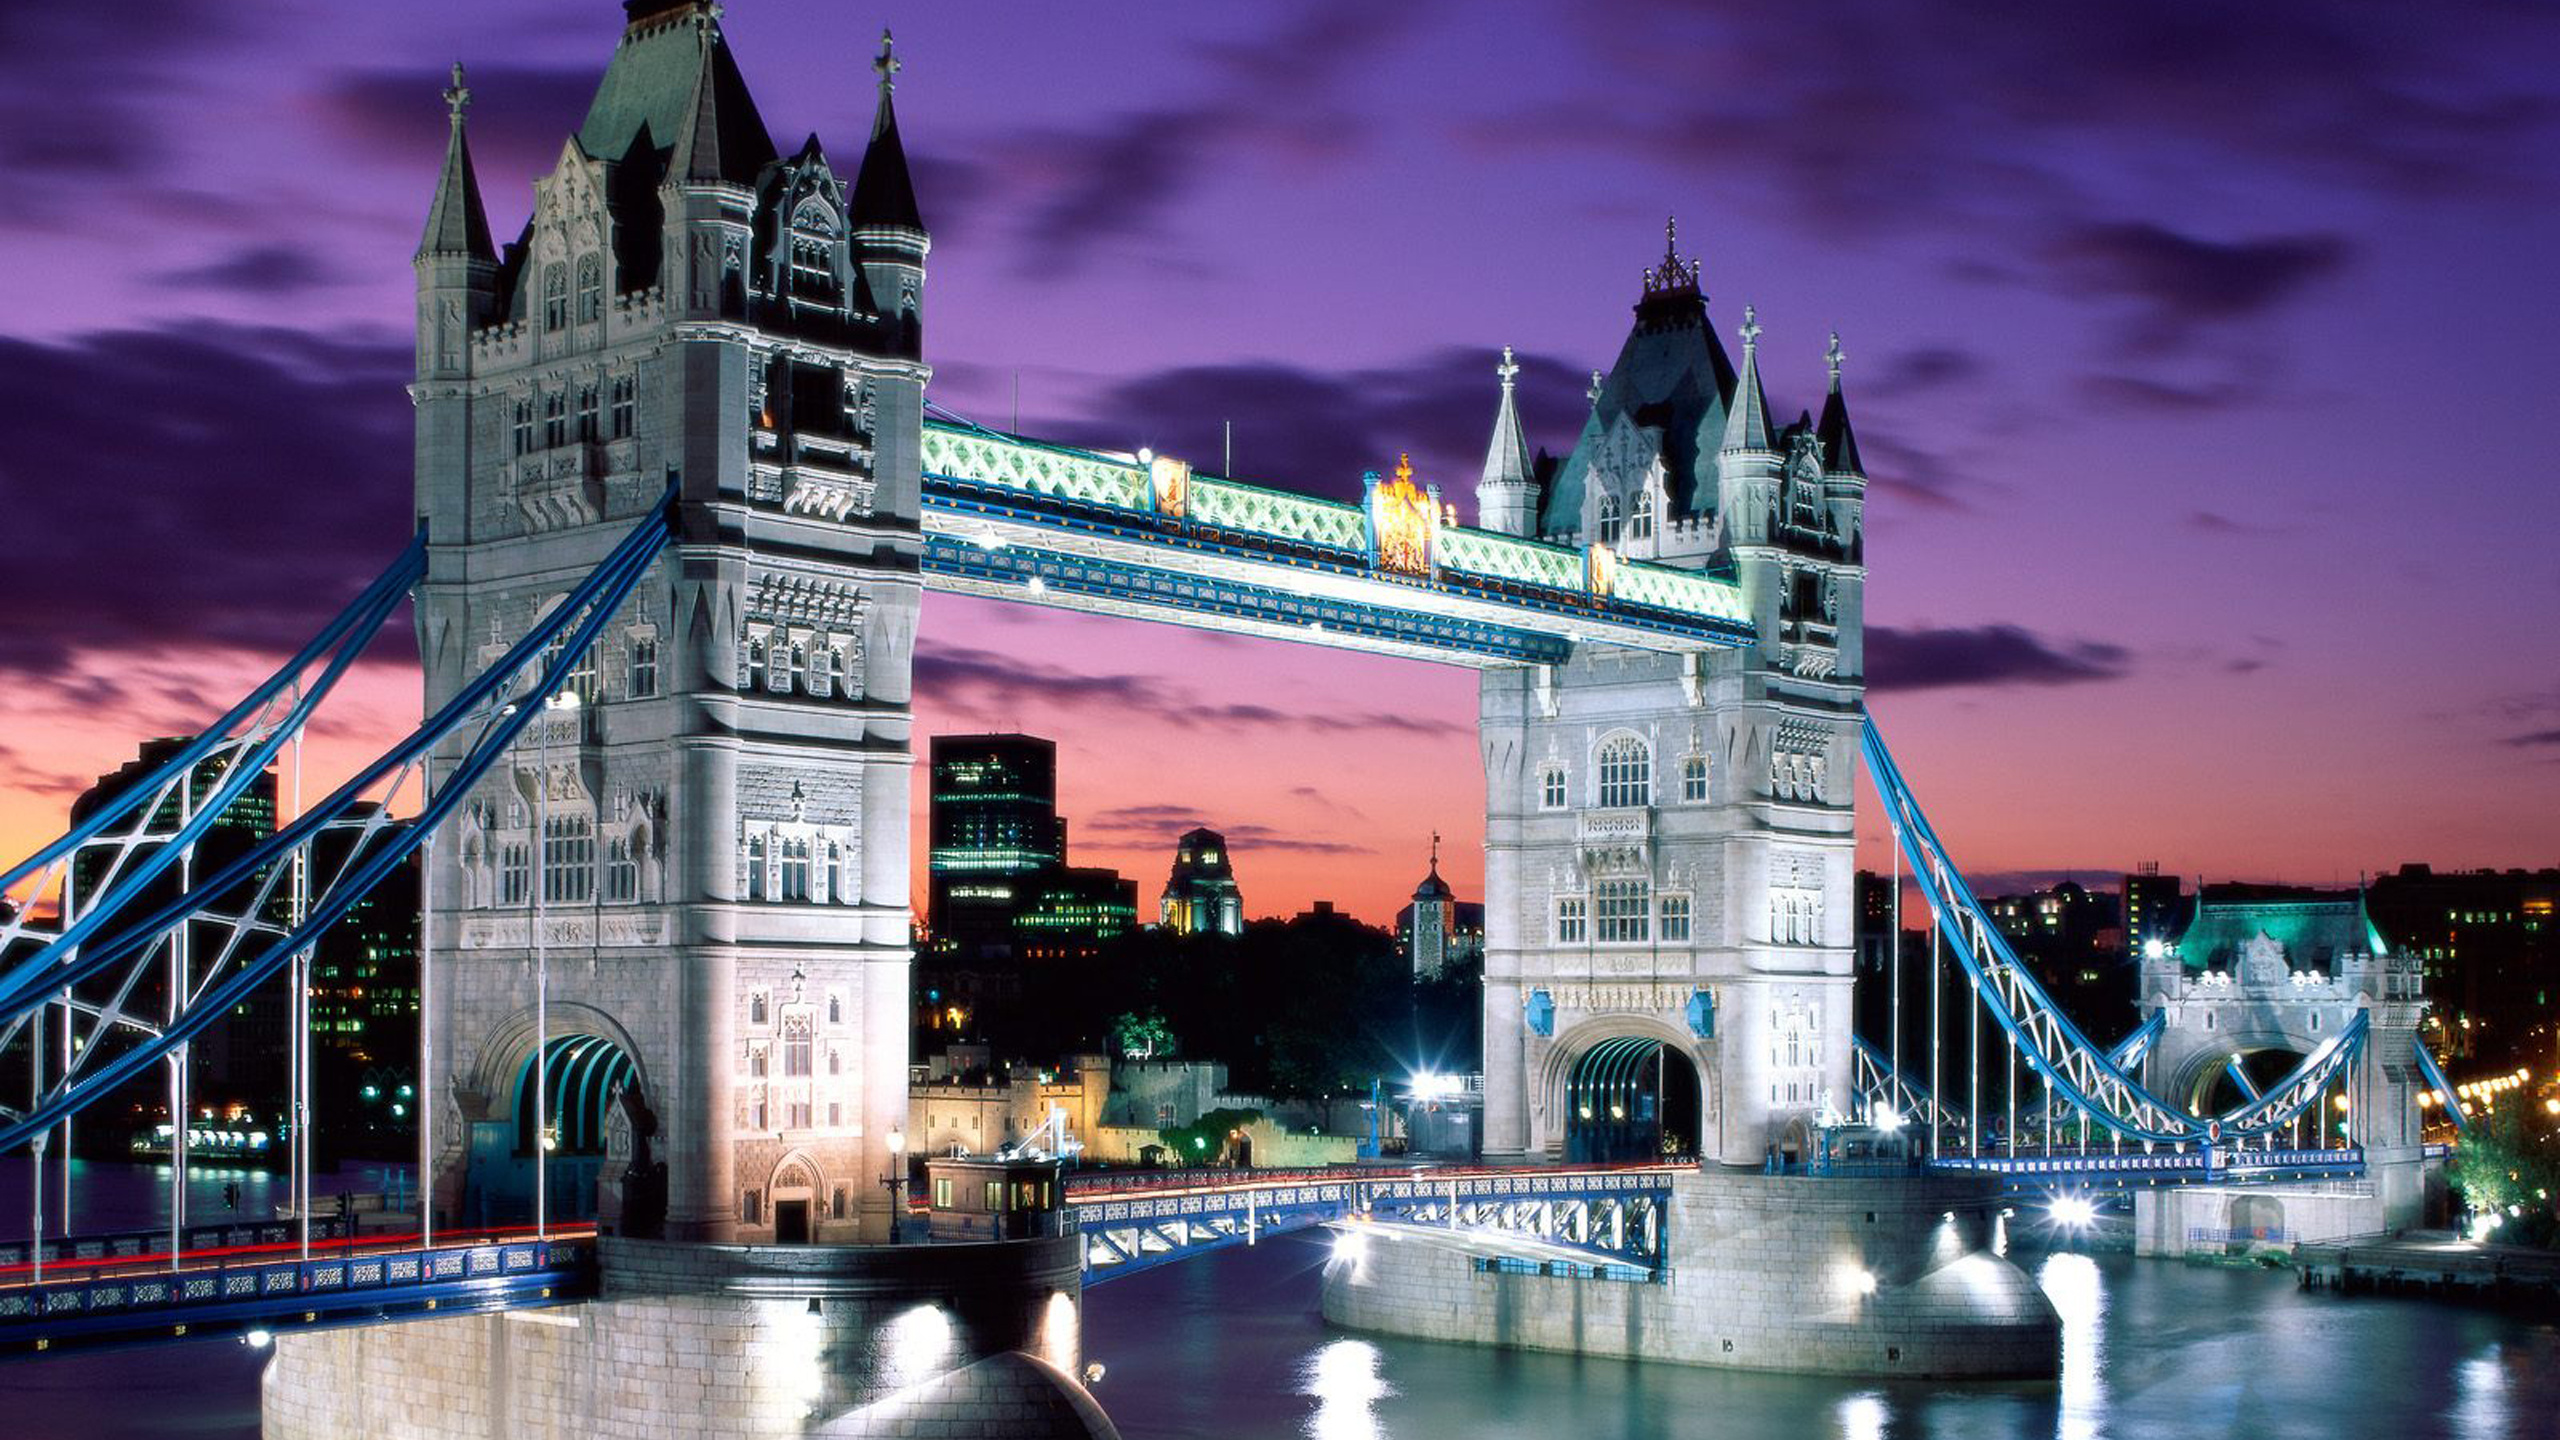 塔桥, 泰晤士河, 伦敦塔, 伦敦桥, 里程碑 壁纸 2560x1440 允许